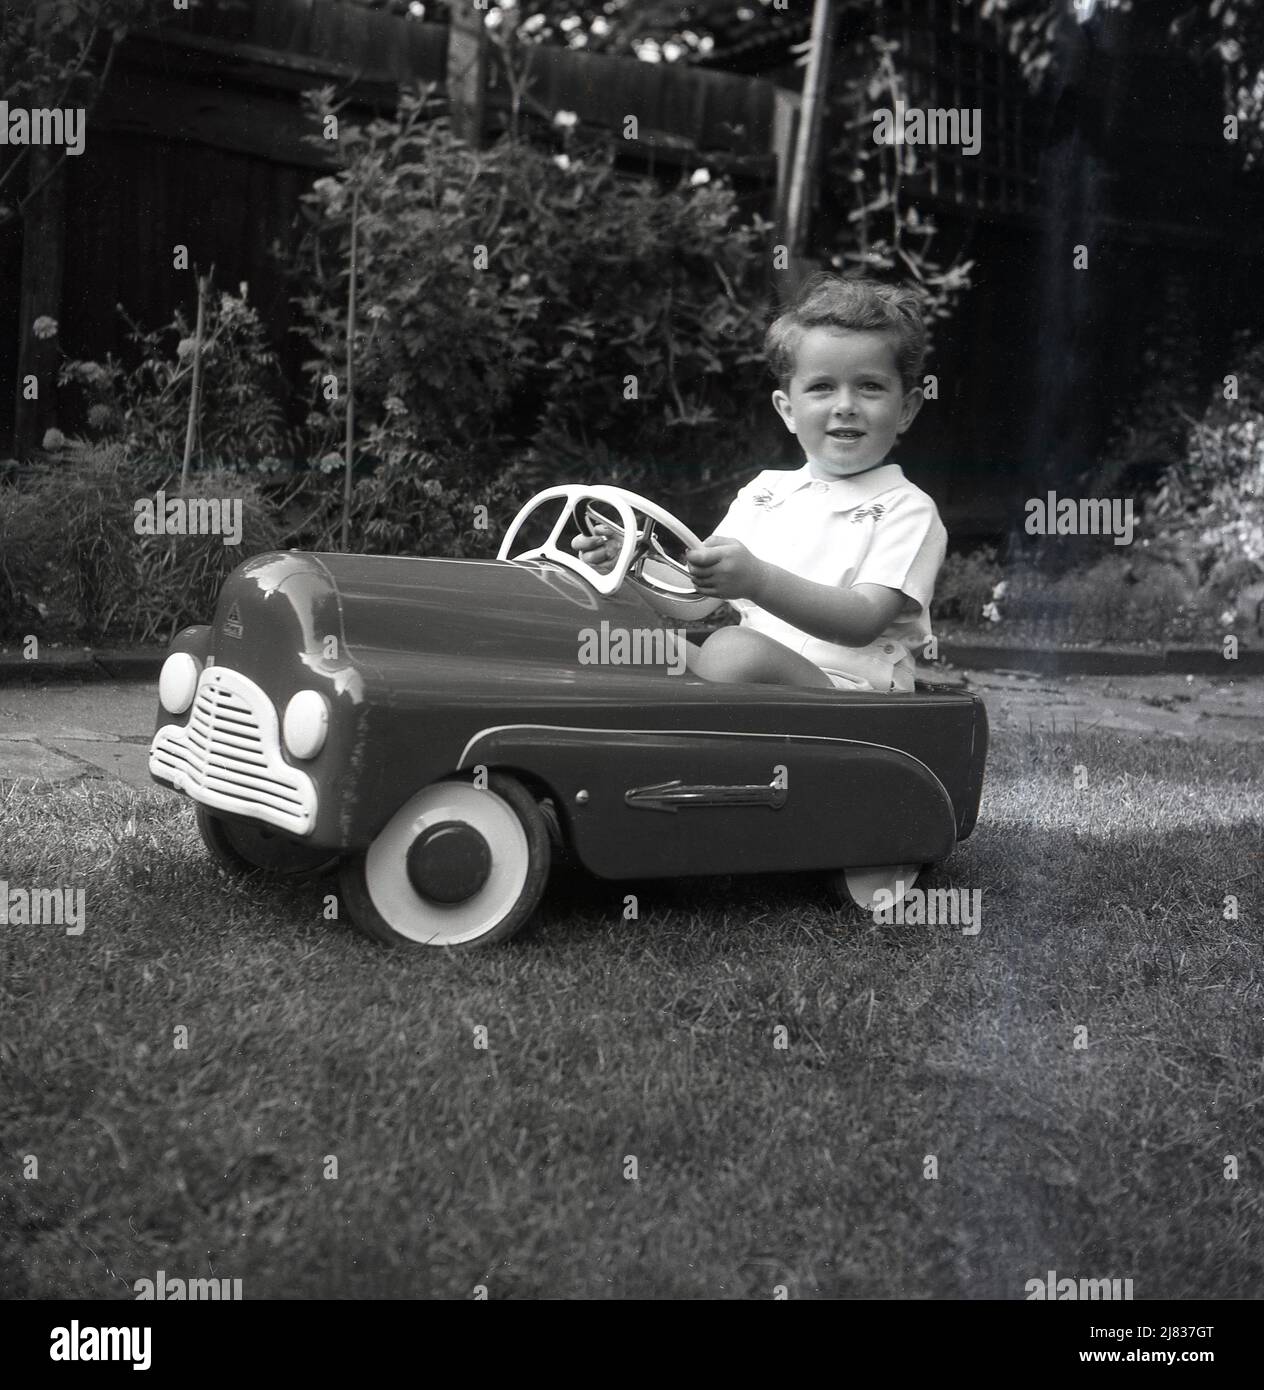 1953, historisch, draußen in einem Garten, ein kleiner Junge, der in seinem fahrbaren Spielzeugpedal der damaligen Zeit sitzt, ein britischer Tri-Ang 'Thirty B'. Aus gepresstem Stahl gefertigt, hatte das Spielzeugauto eine Hochglanz-Emaille-Oberfläche mit Chrome-Pfeilen an der Seite. Tri-Ang war der Markenname von Line Bros. Ltd, einem britischen Unternehmen, das in dieser Zeit das größte Spielzeug- und Babywagenhersteller der Welt war. Stockfoto